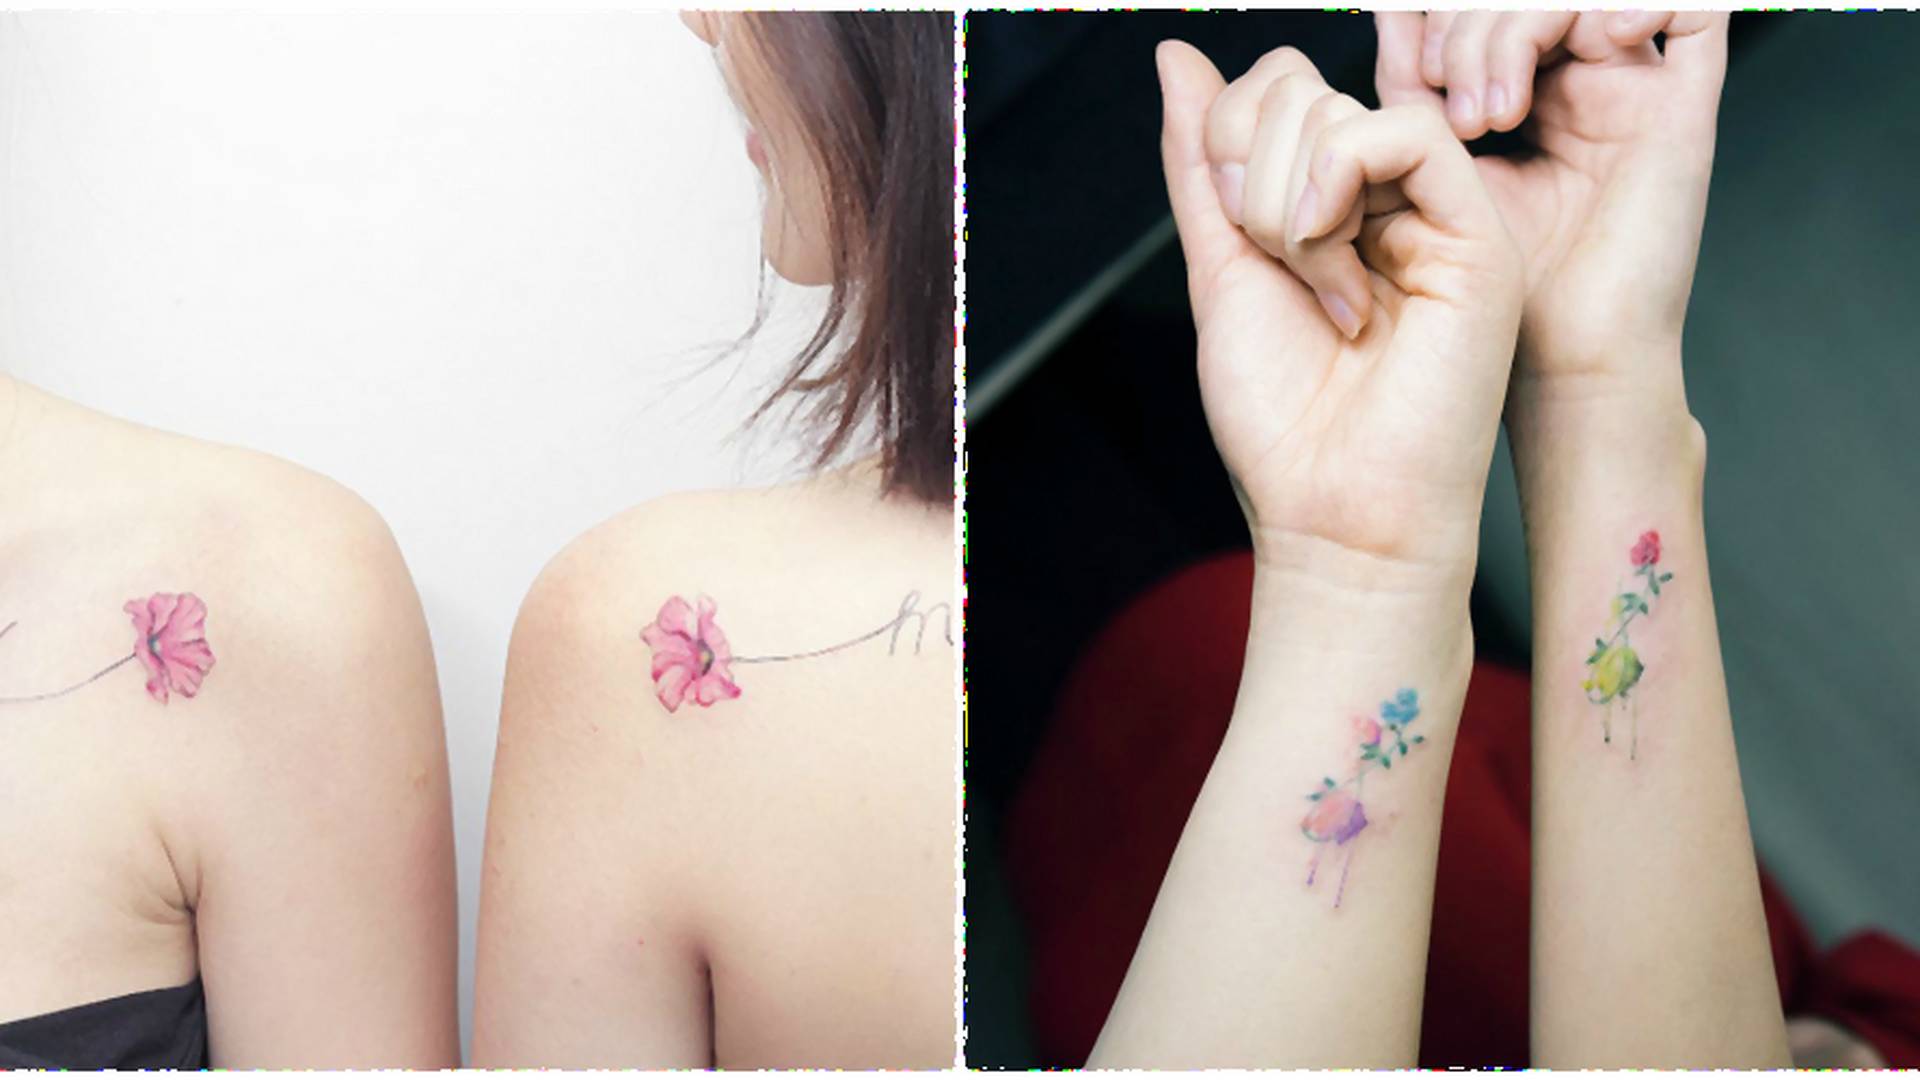 Tatuaże dla przyjaciółek - wzory, które Was zachwycą! ❤